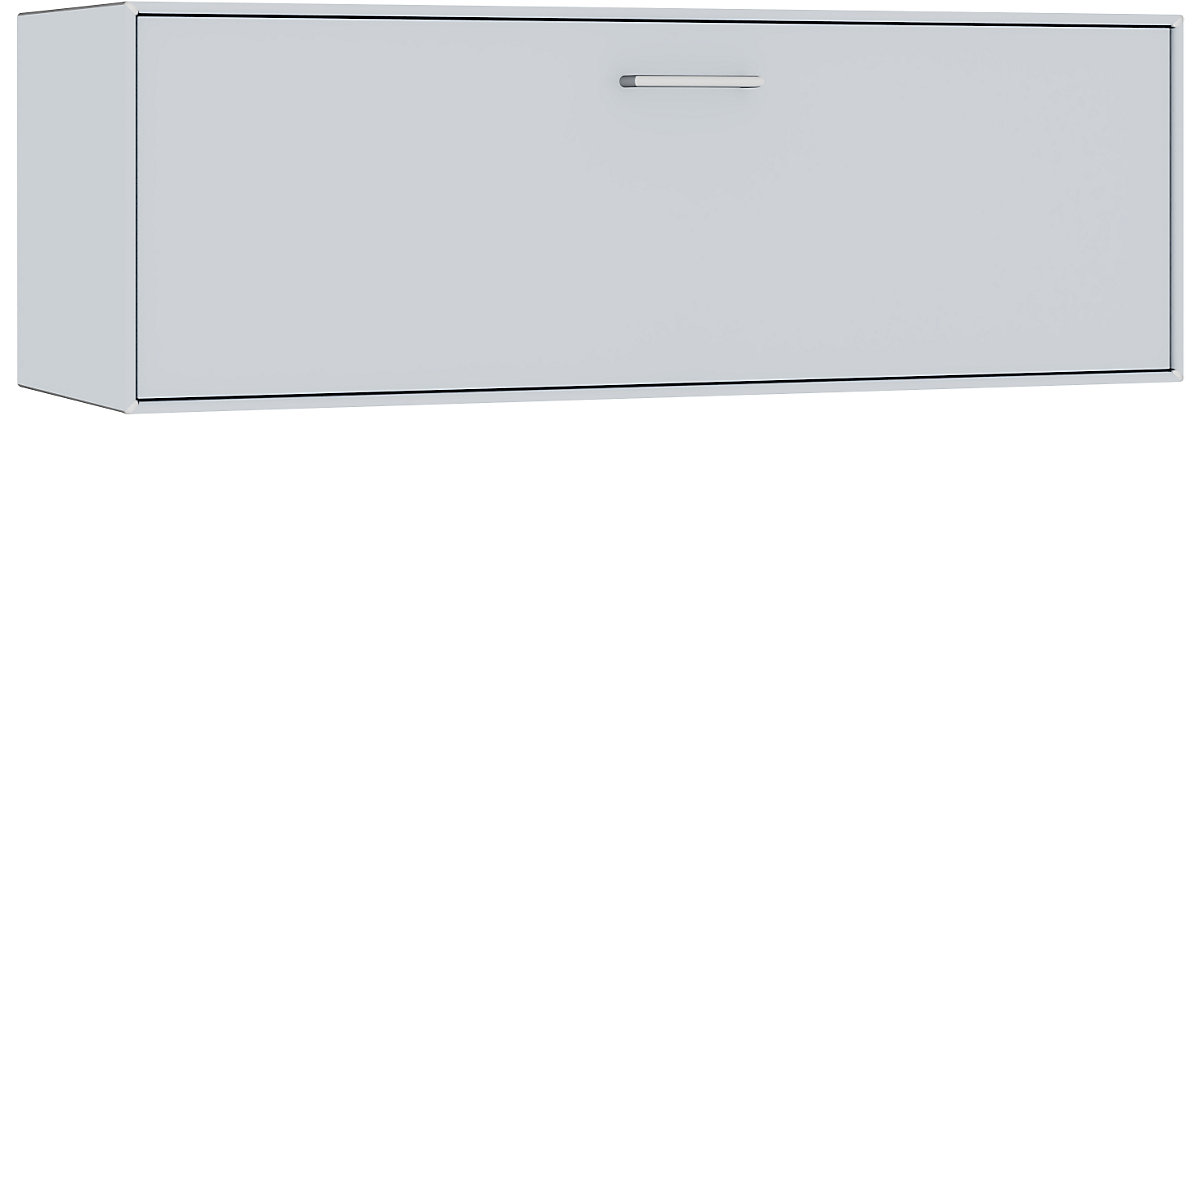 Cuie individuală, suspendată – mauser, 1 sertar, lățime 1155 mm, alb aluminiu-5